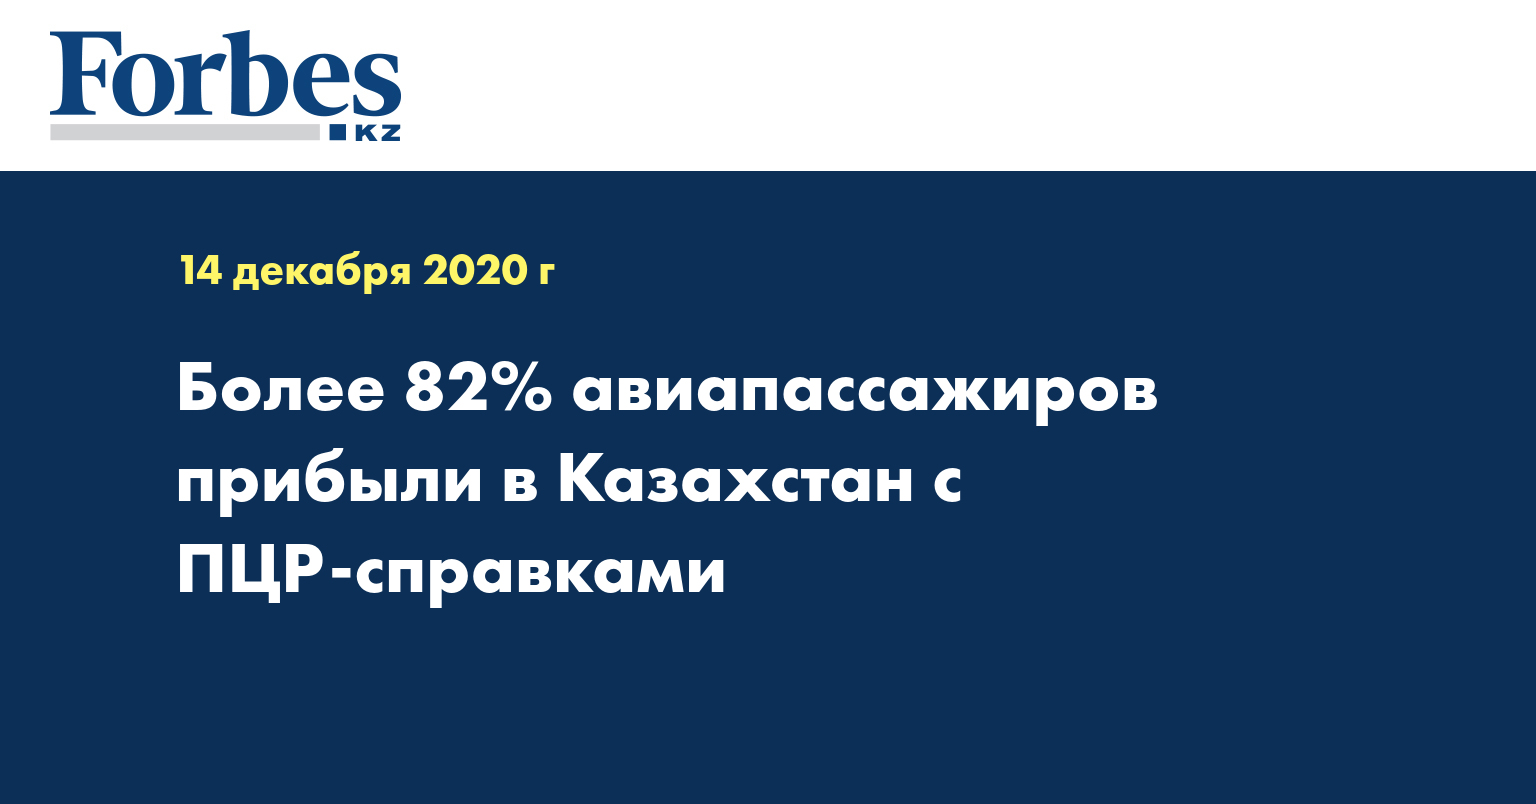 Более 82% авиапассажиров прибыли в Казахстан с ПЦР-справками